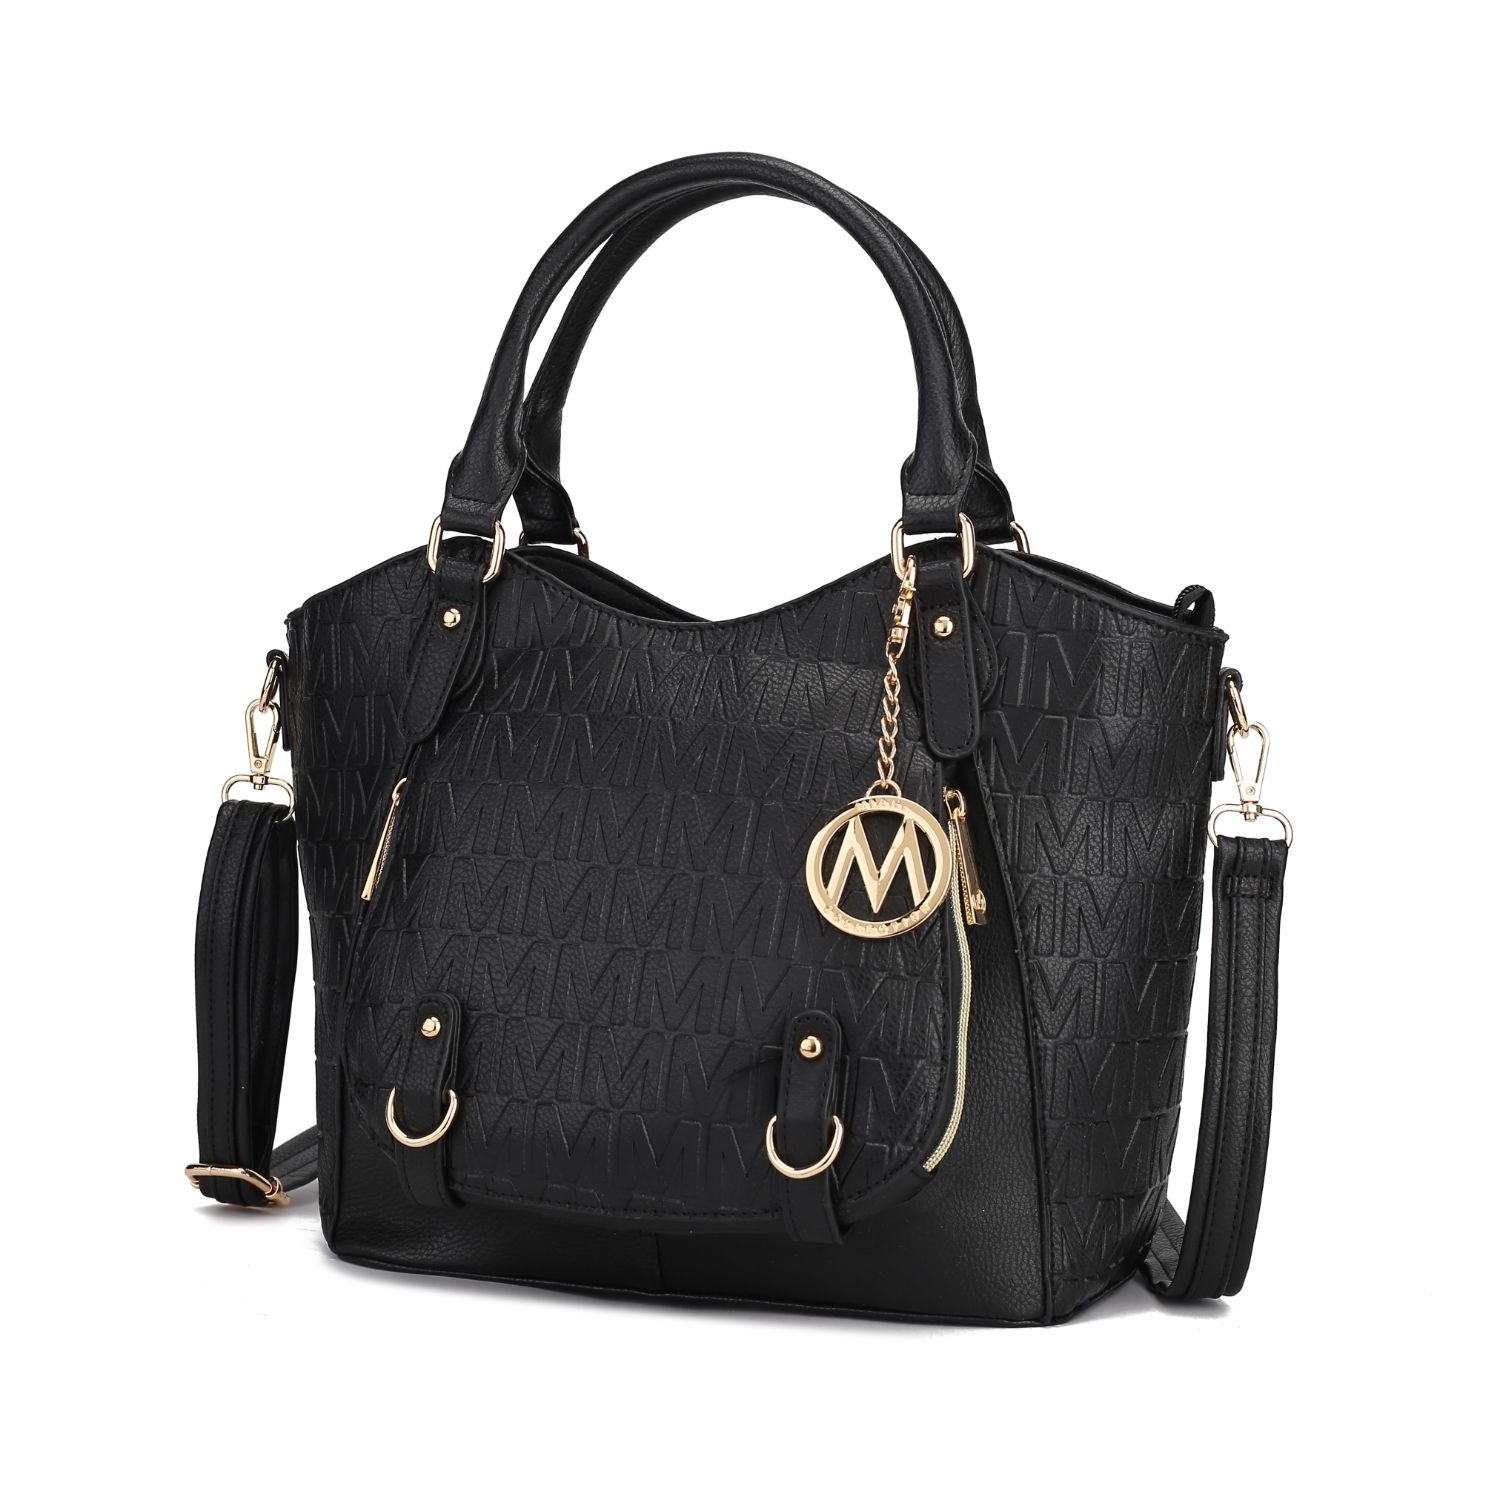 MKF Collection Melissa Tote Handbag By Mia K. - Black